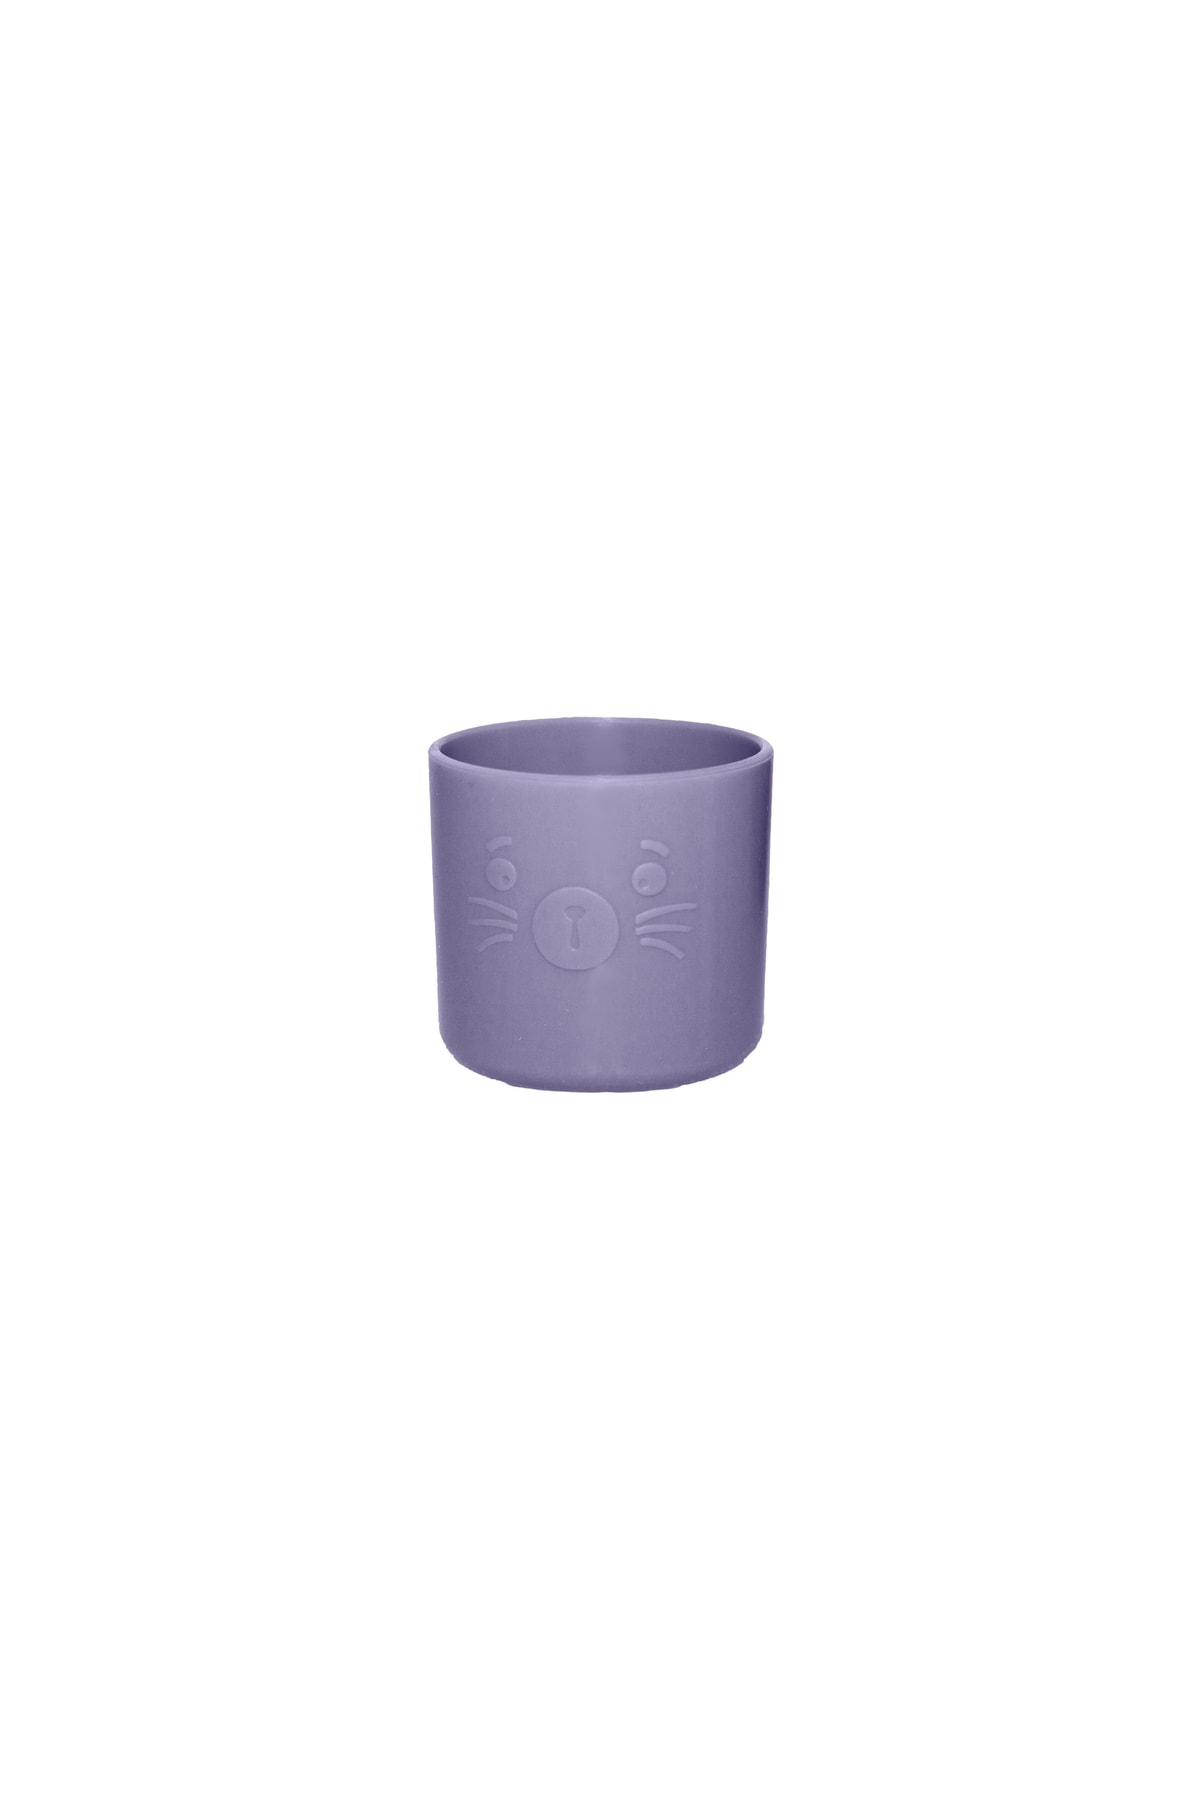 pandish Bubu Silikon Alıştırma Bardağı Lilac